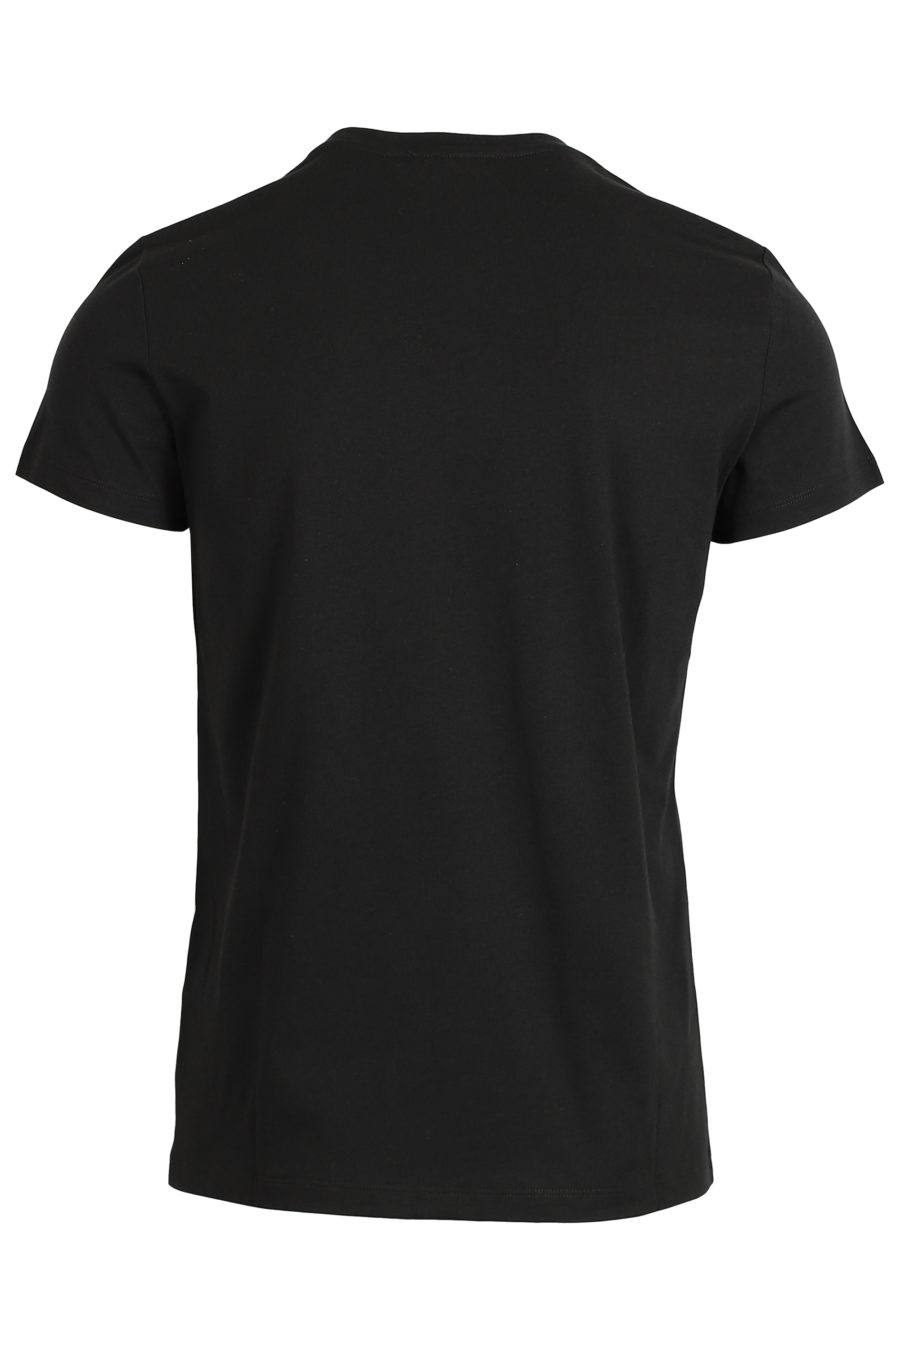 T-shirt preta com logótipo em veludo branco - IMG 3616